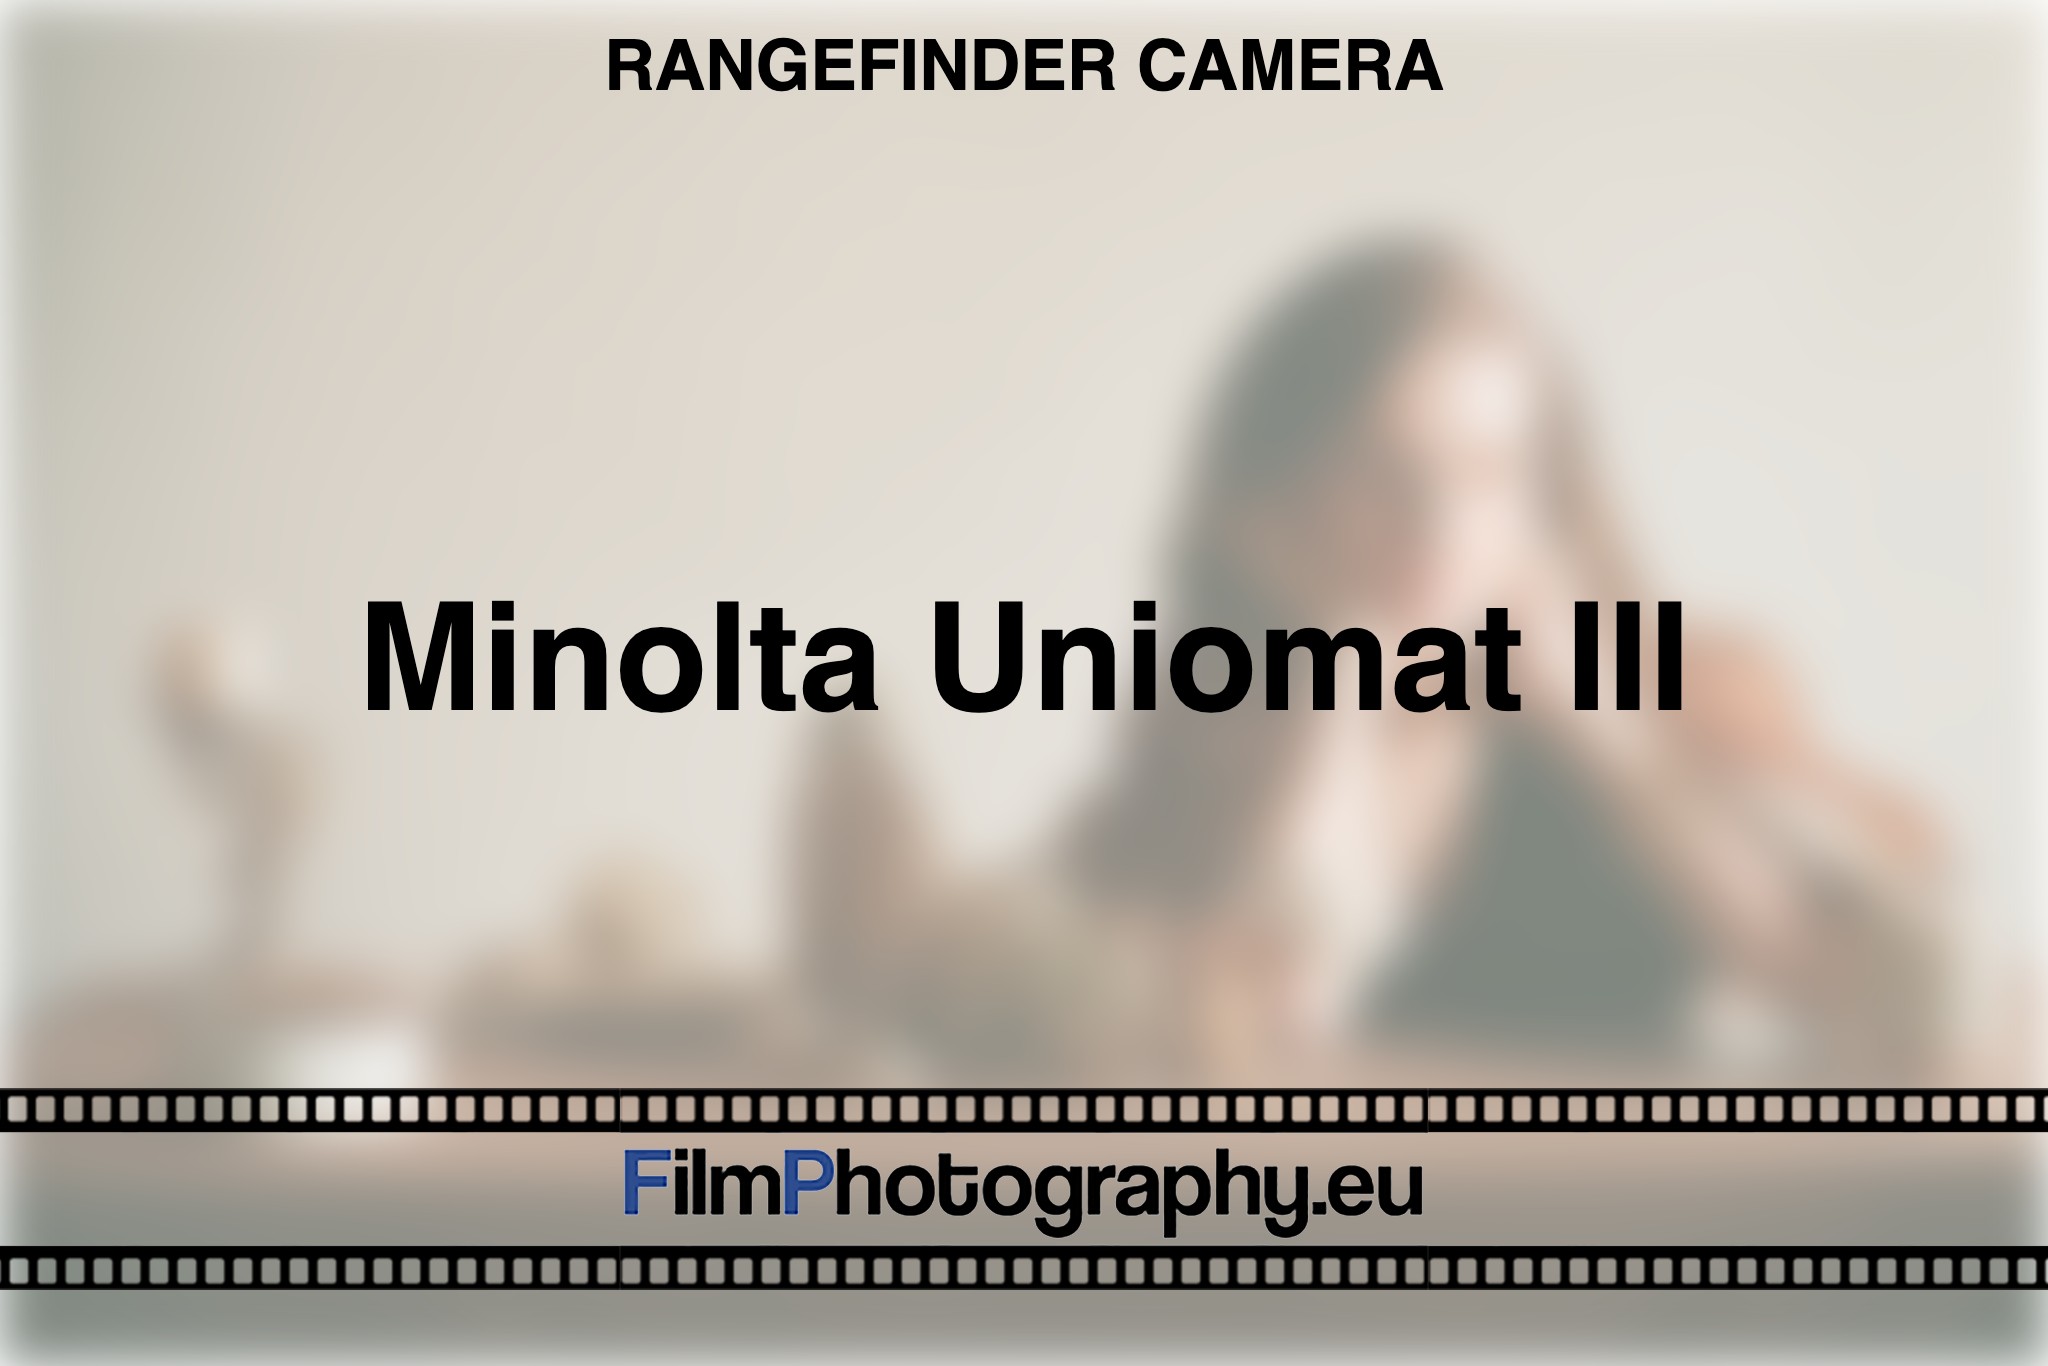 minolta-uniomat-iii-rangefinder-camera-bnv